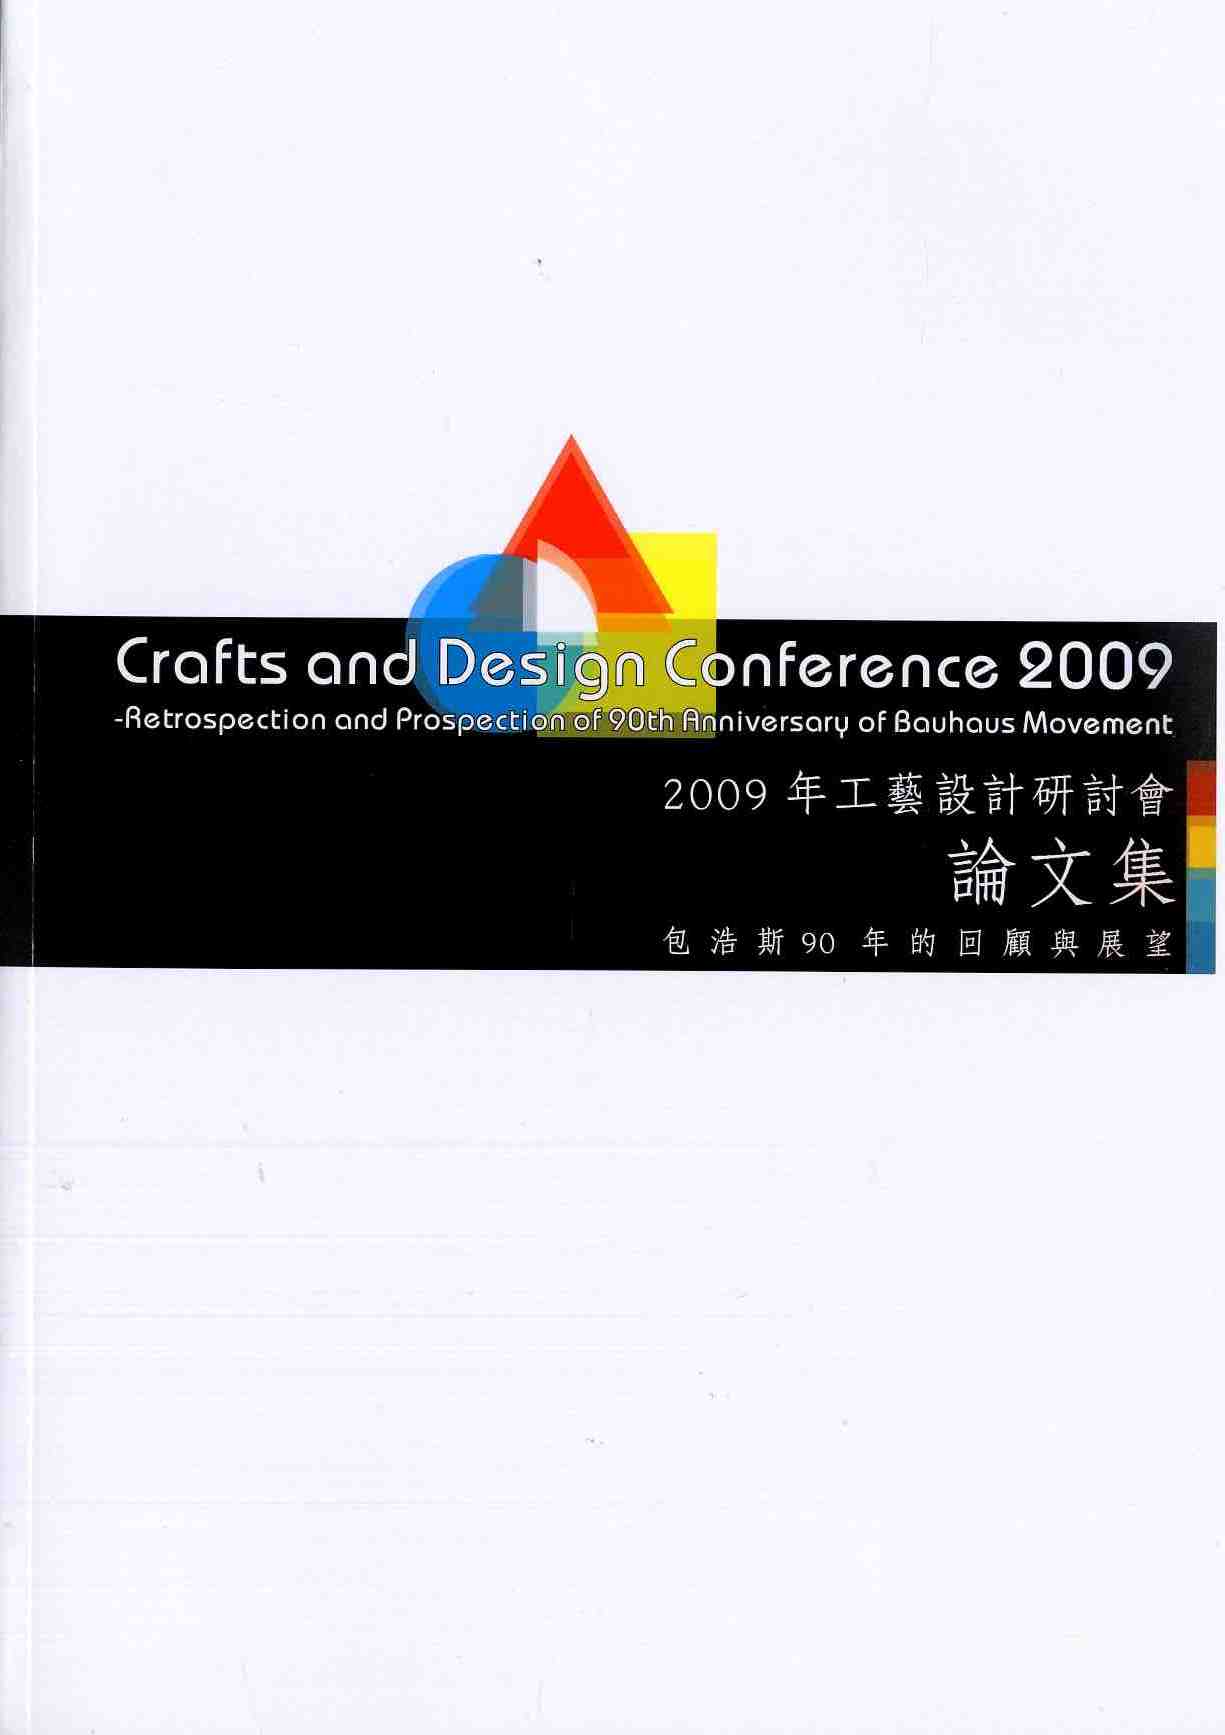 2009年工藝設計研討會：包浩斯90年的回顧與展望 論文集